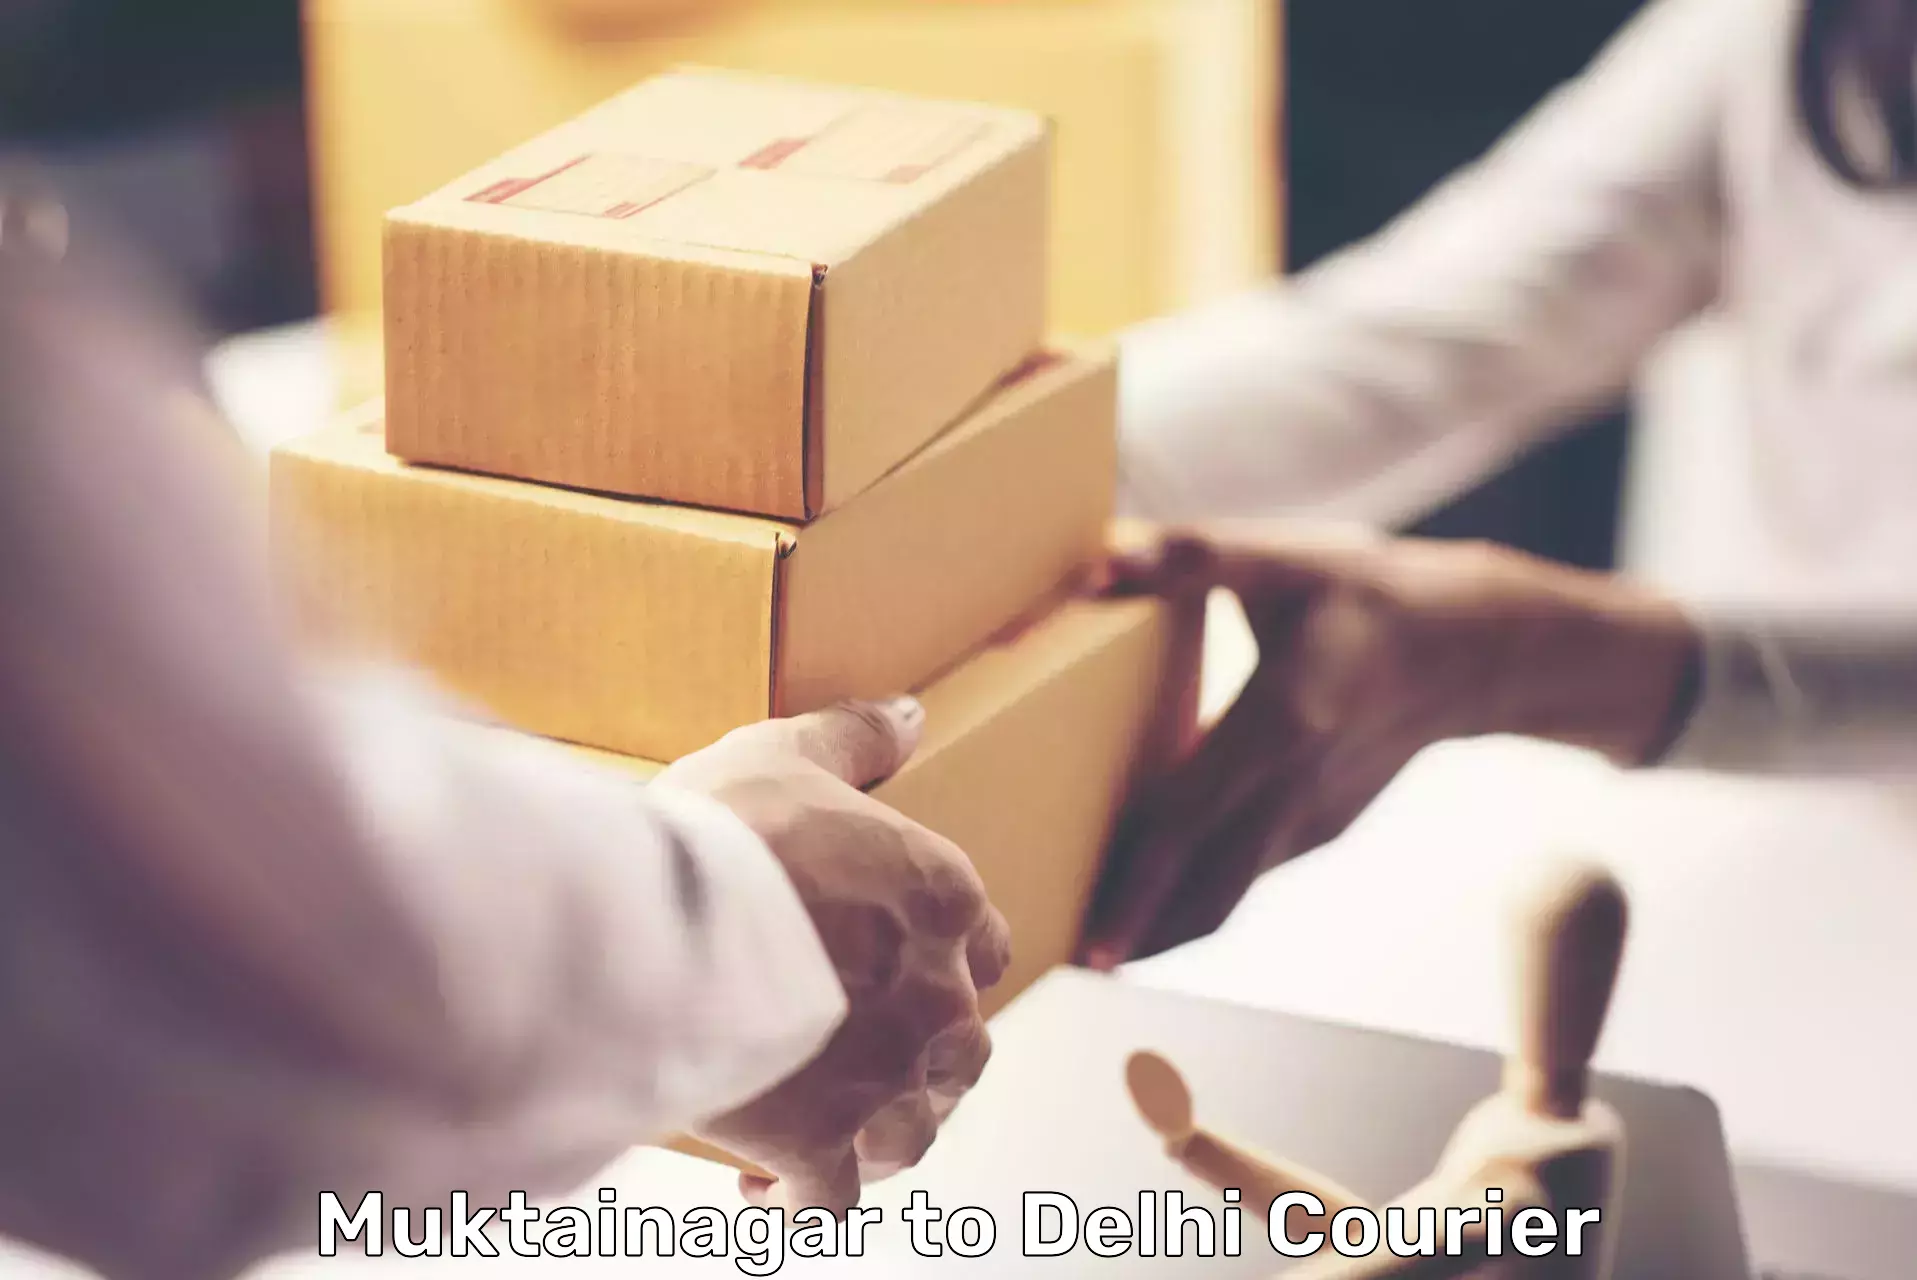 Urban courier service Muktainagar to NIT Delhi